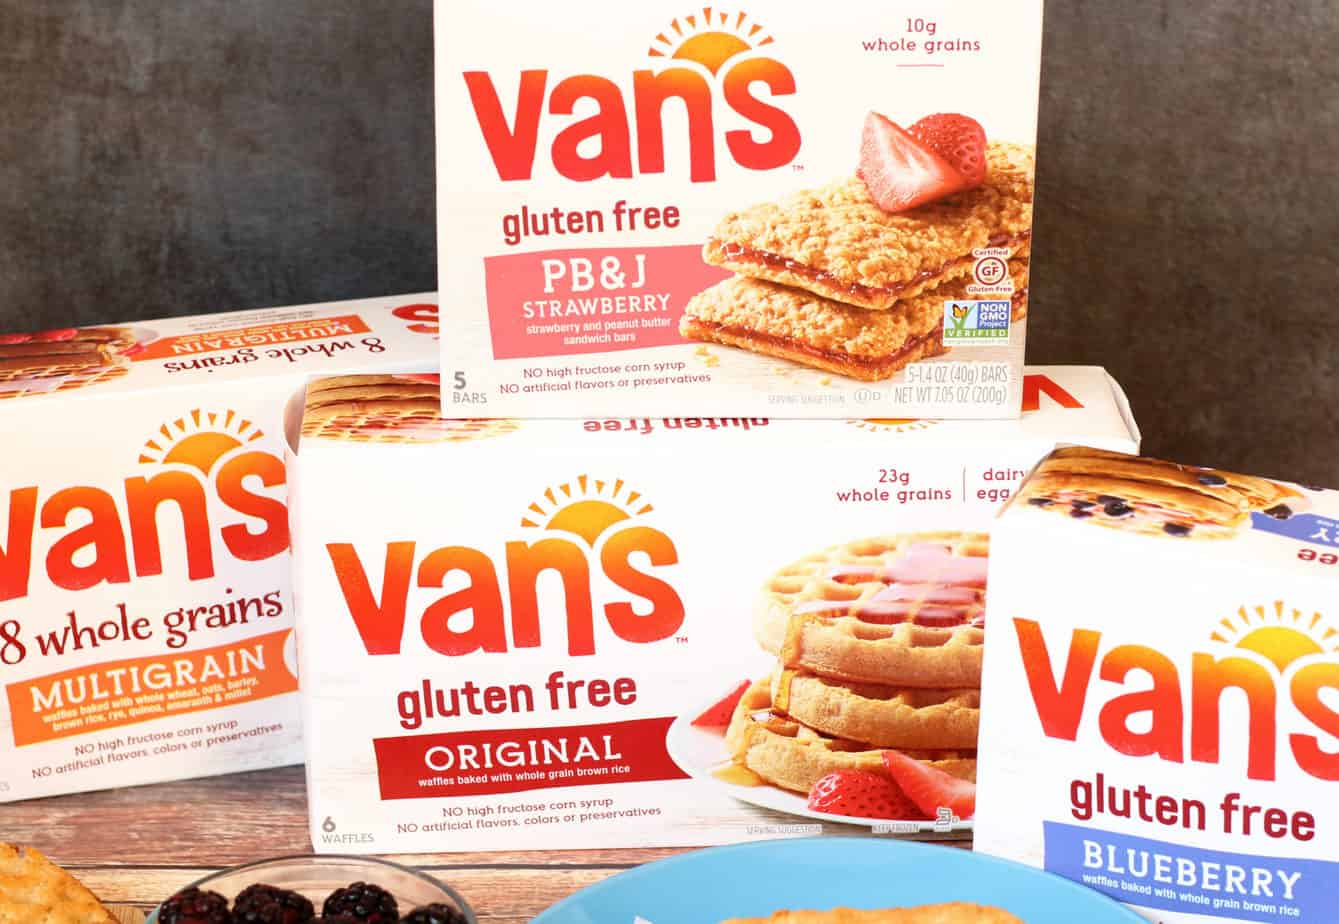 van's gluten free products